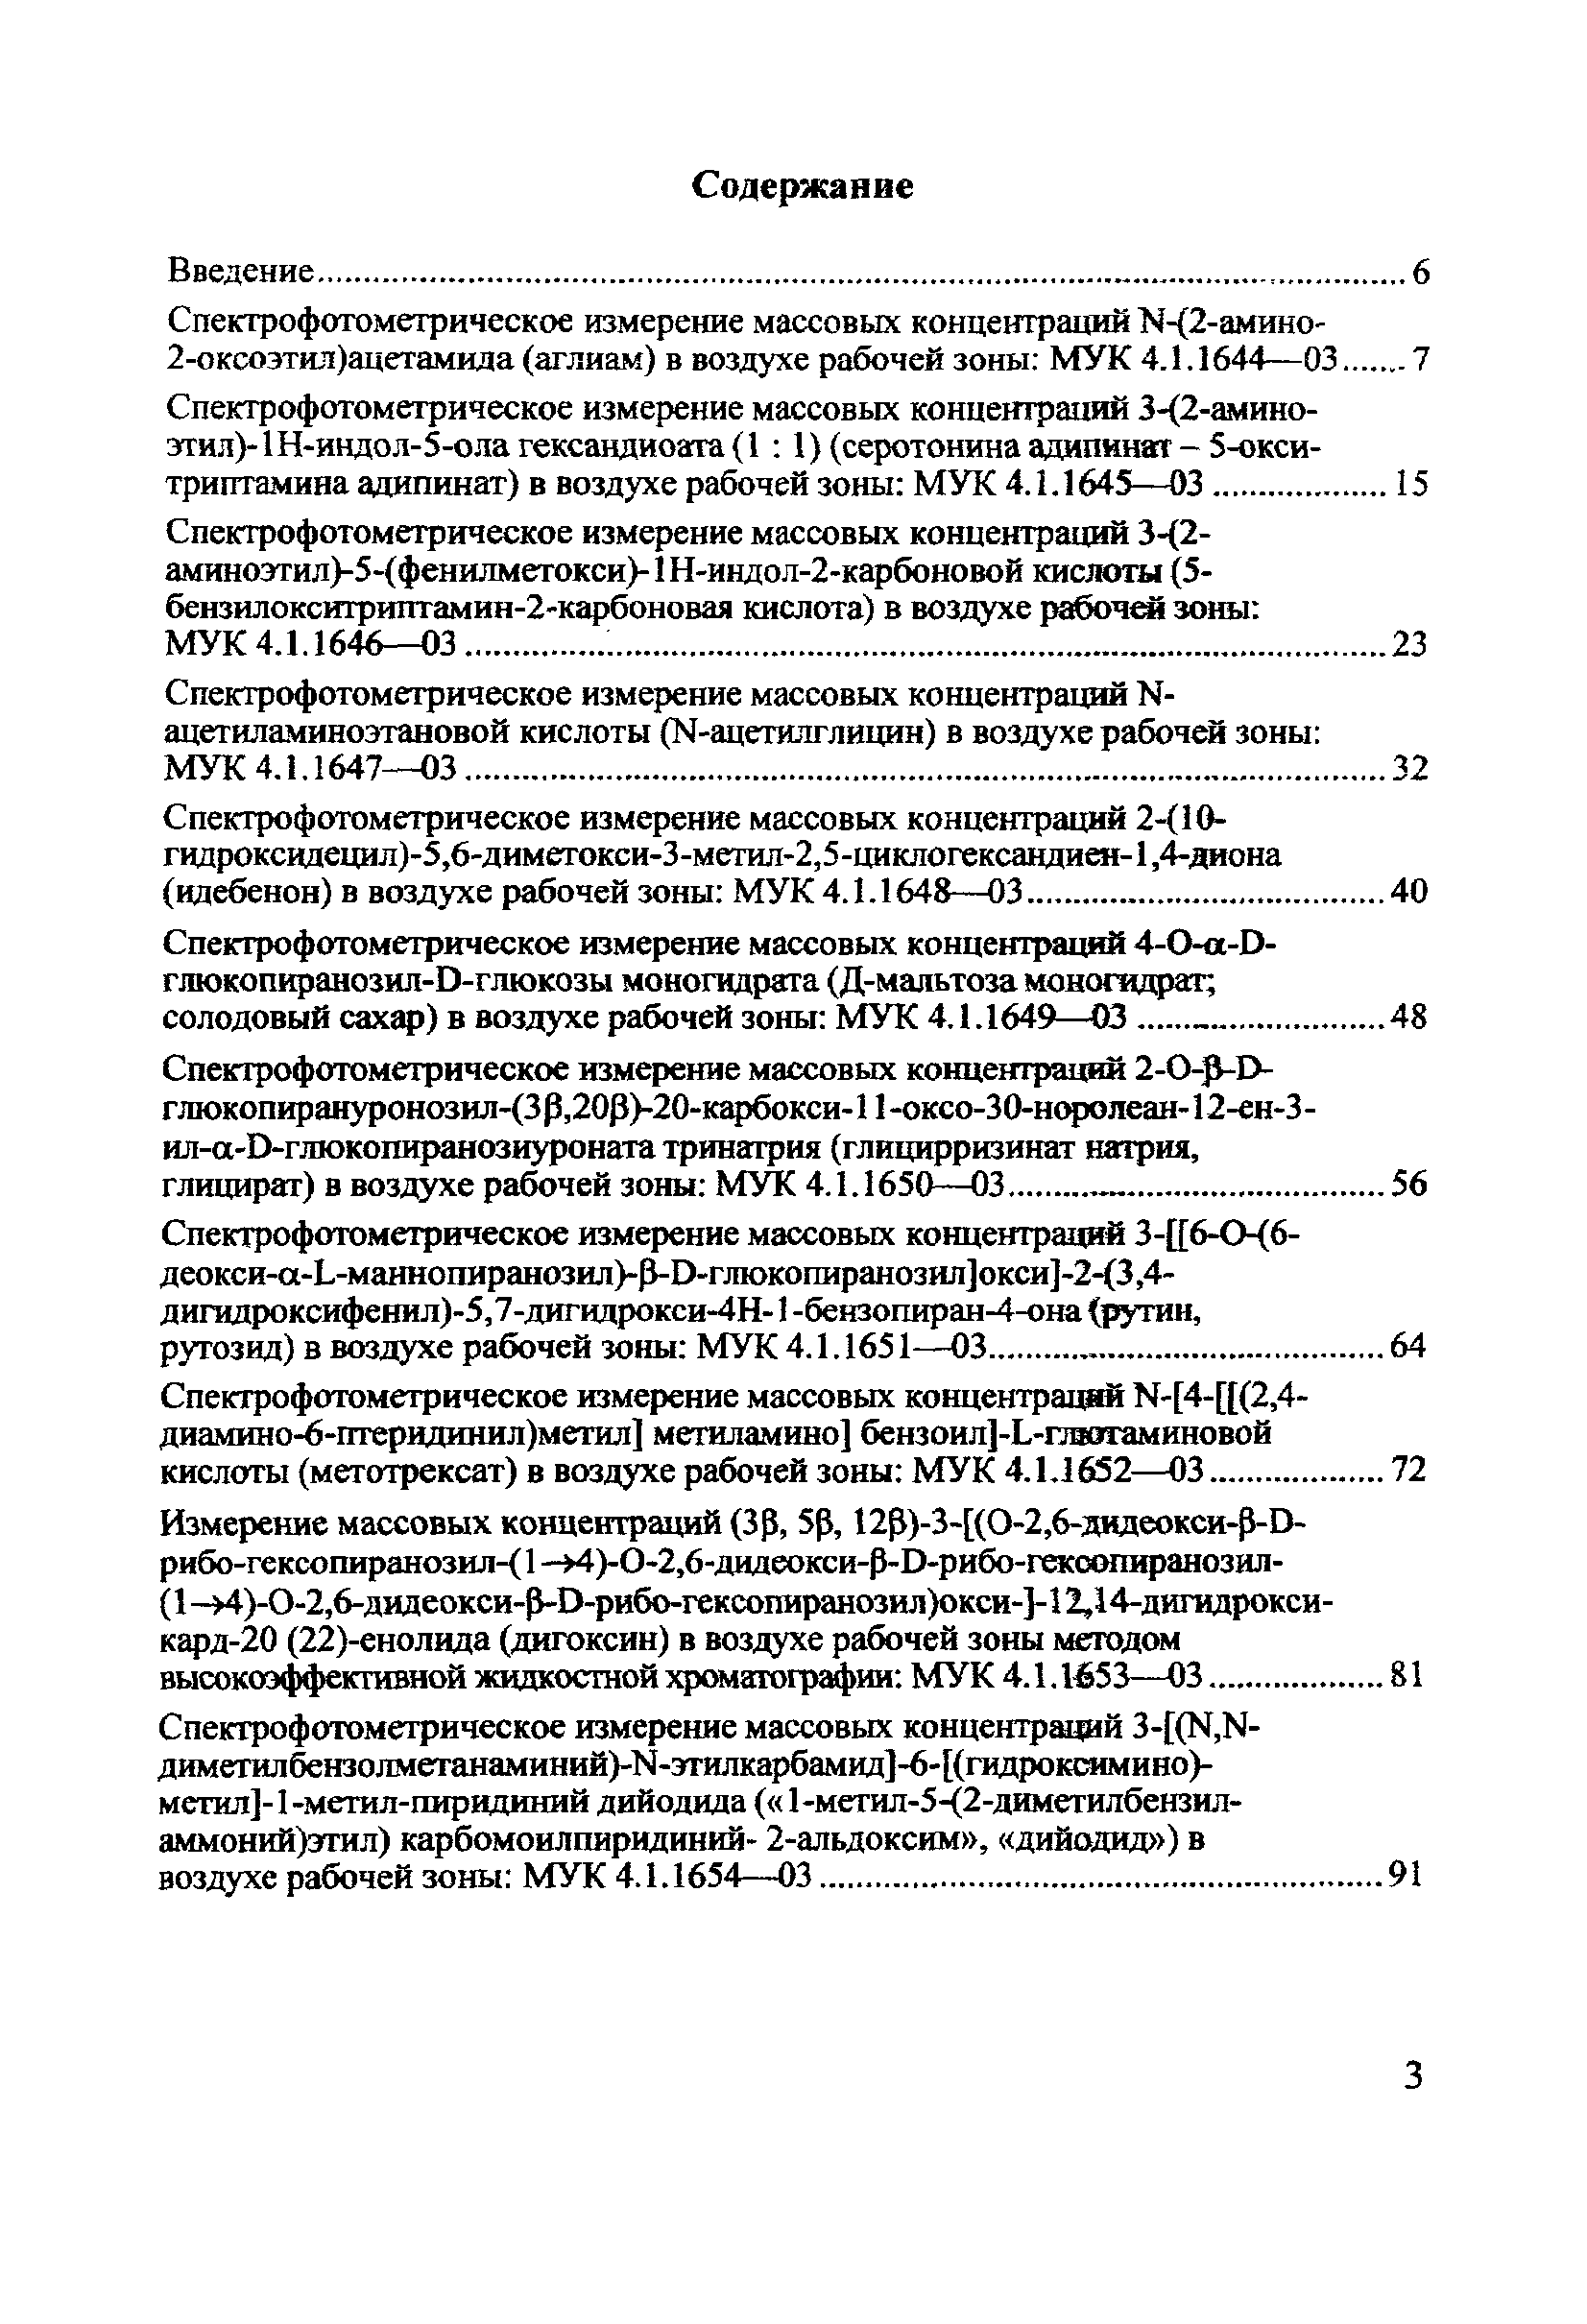 МУК 4.1.1659-03